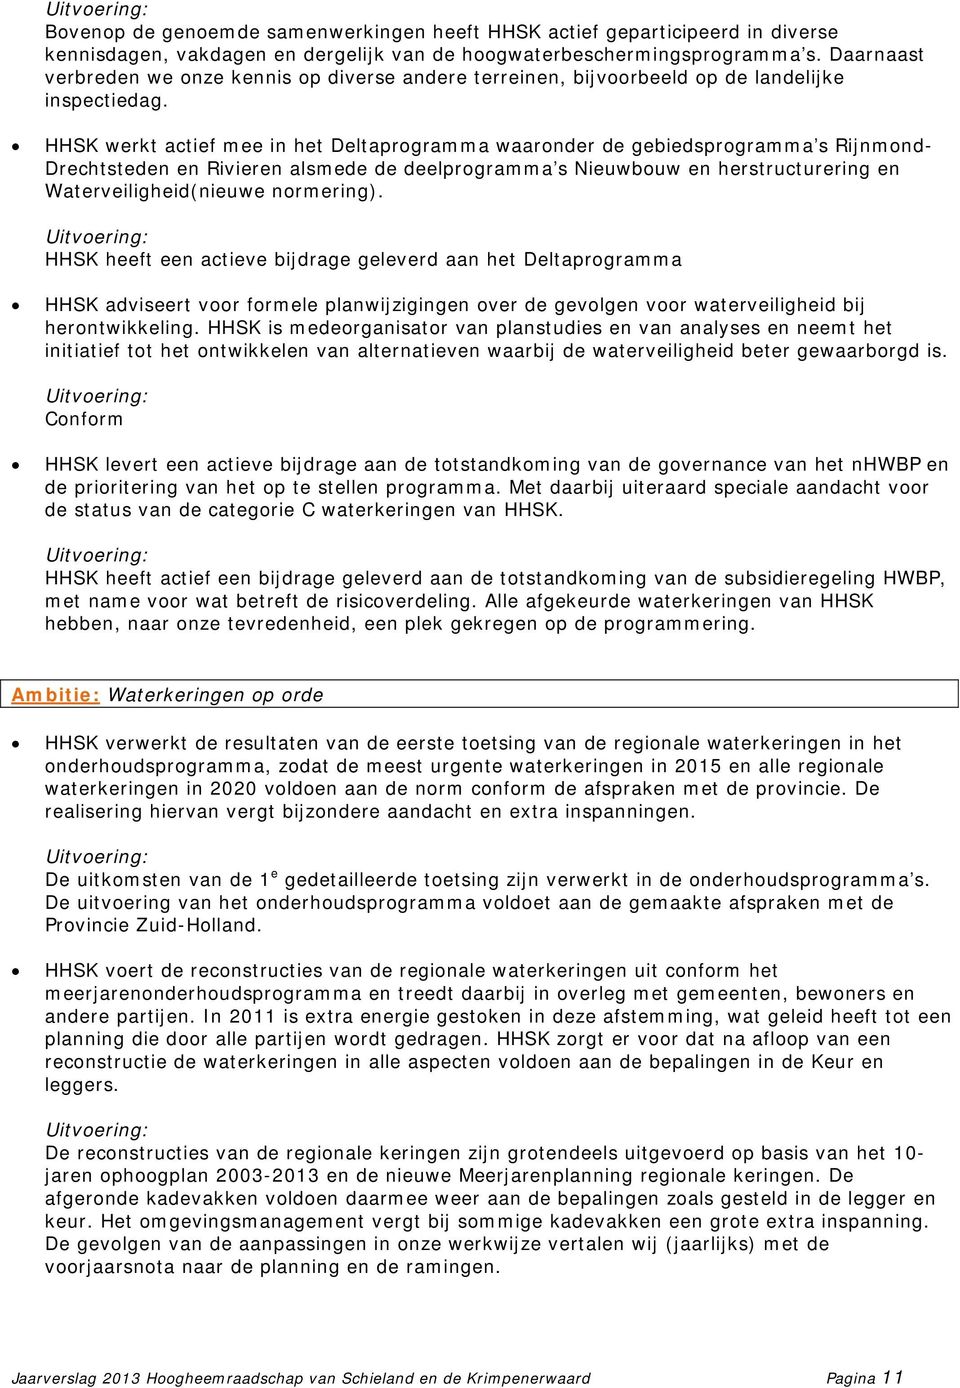 HHSK werkt actief mee in het Deltaprogramma waaronder de gebiedsprogramma s Rijnmond- Drechtsteden en Rivieren alsmede de deelprogramma s Nieuwbouw en herstructurering en Waterveiligheid(nieuwe